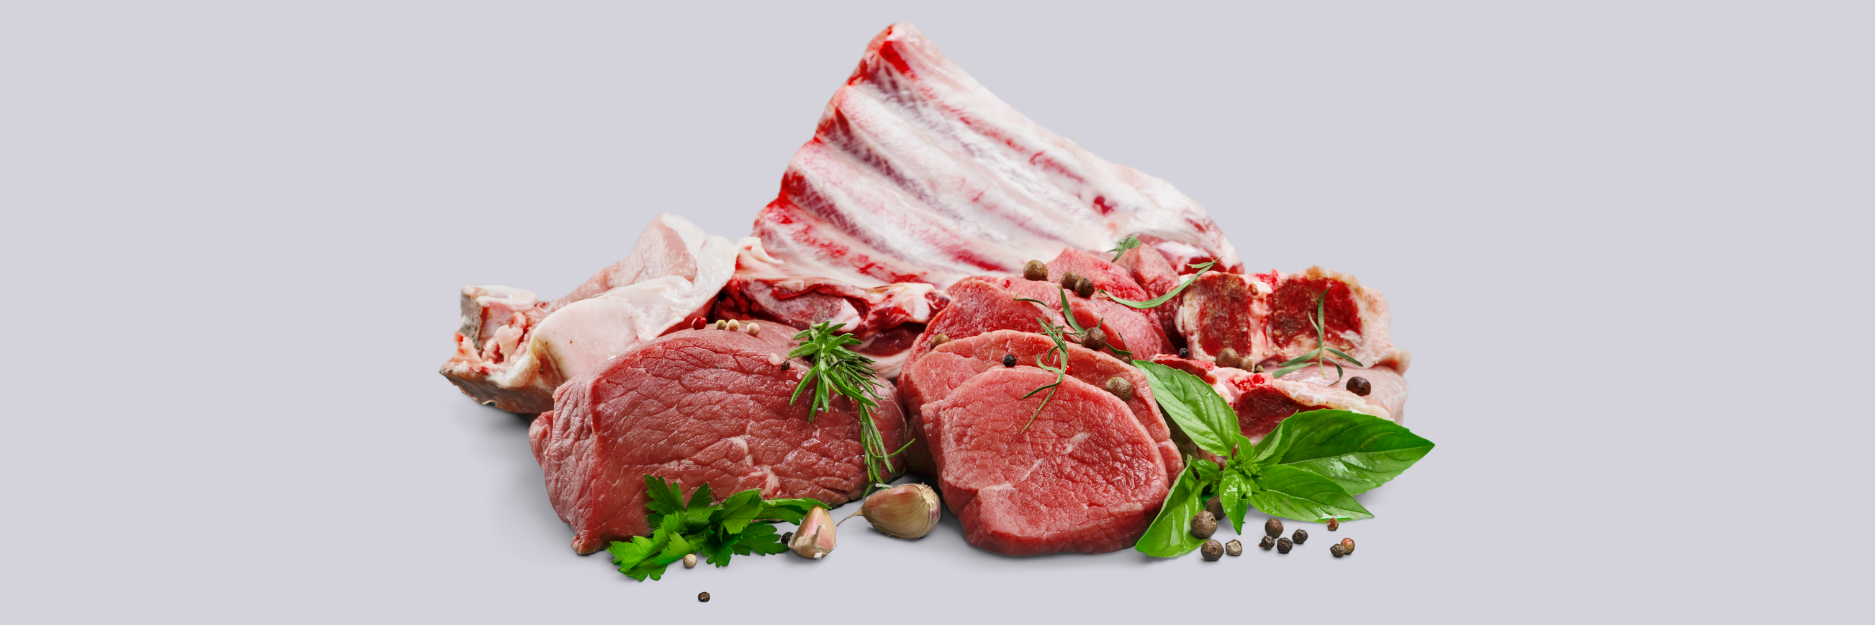 Imagem de diversos tipos de carne.